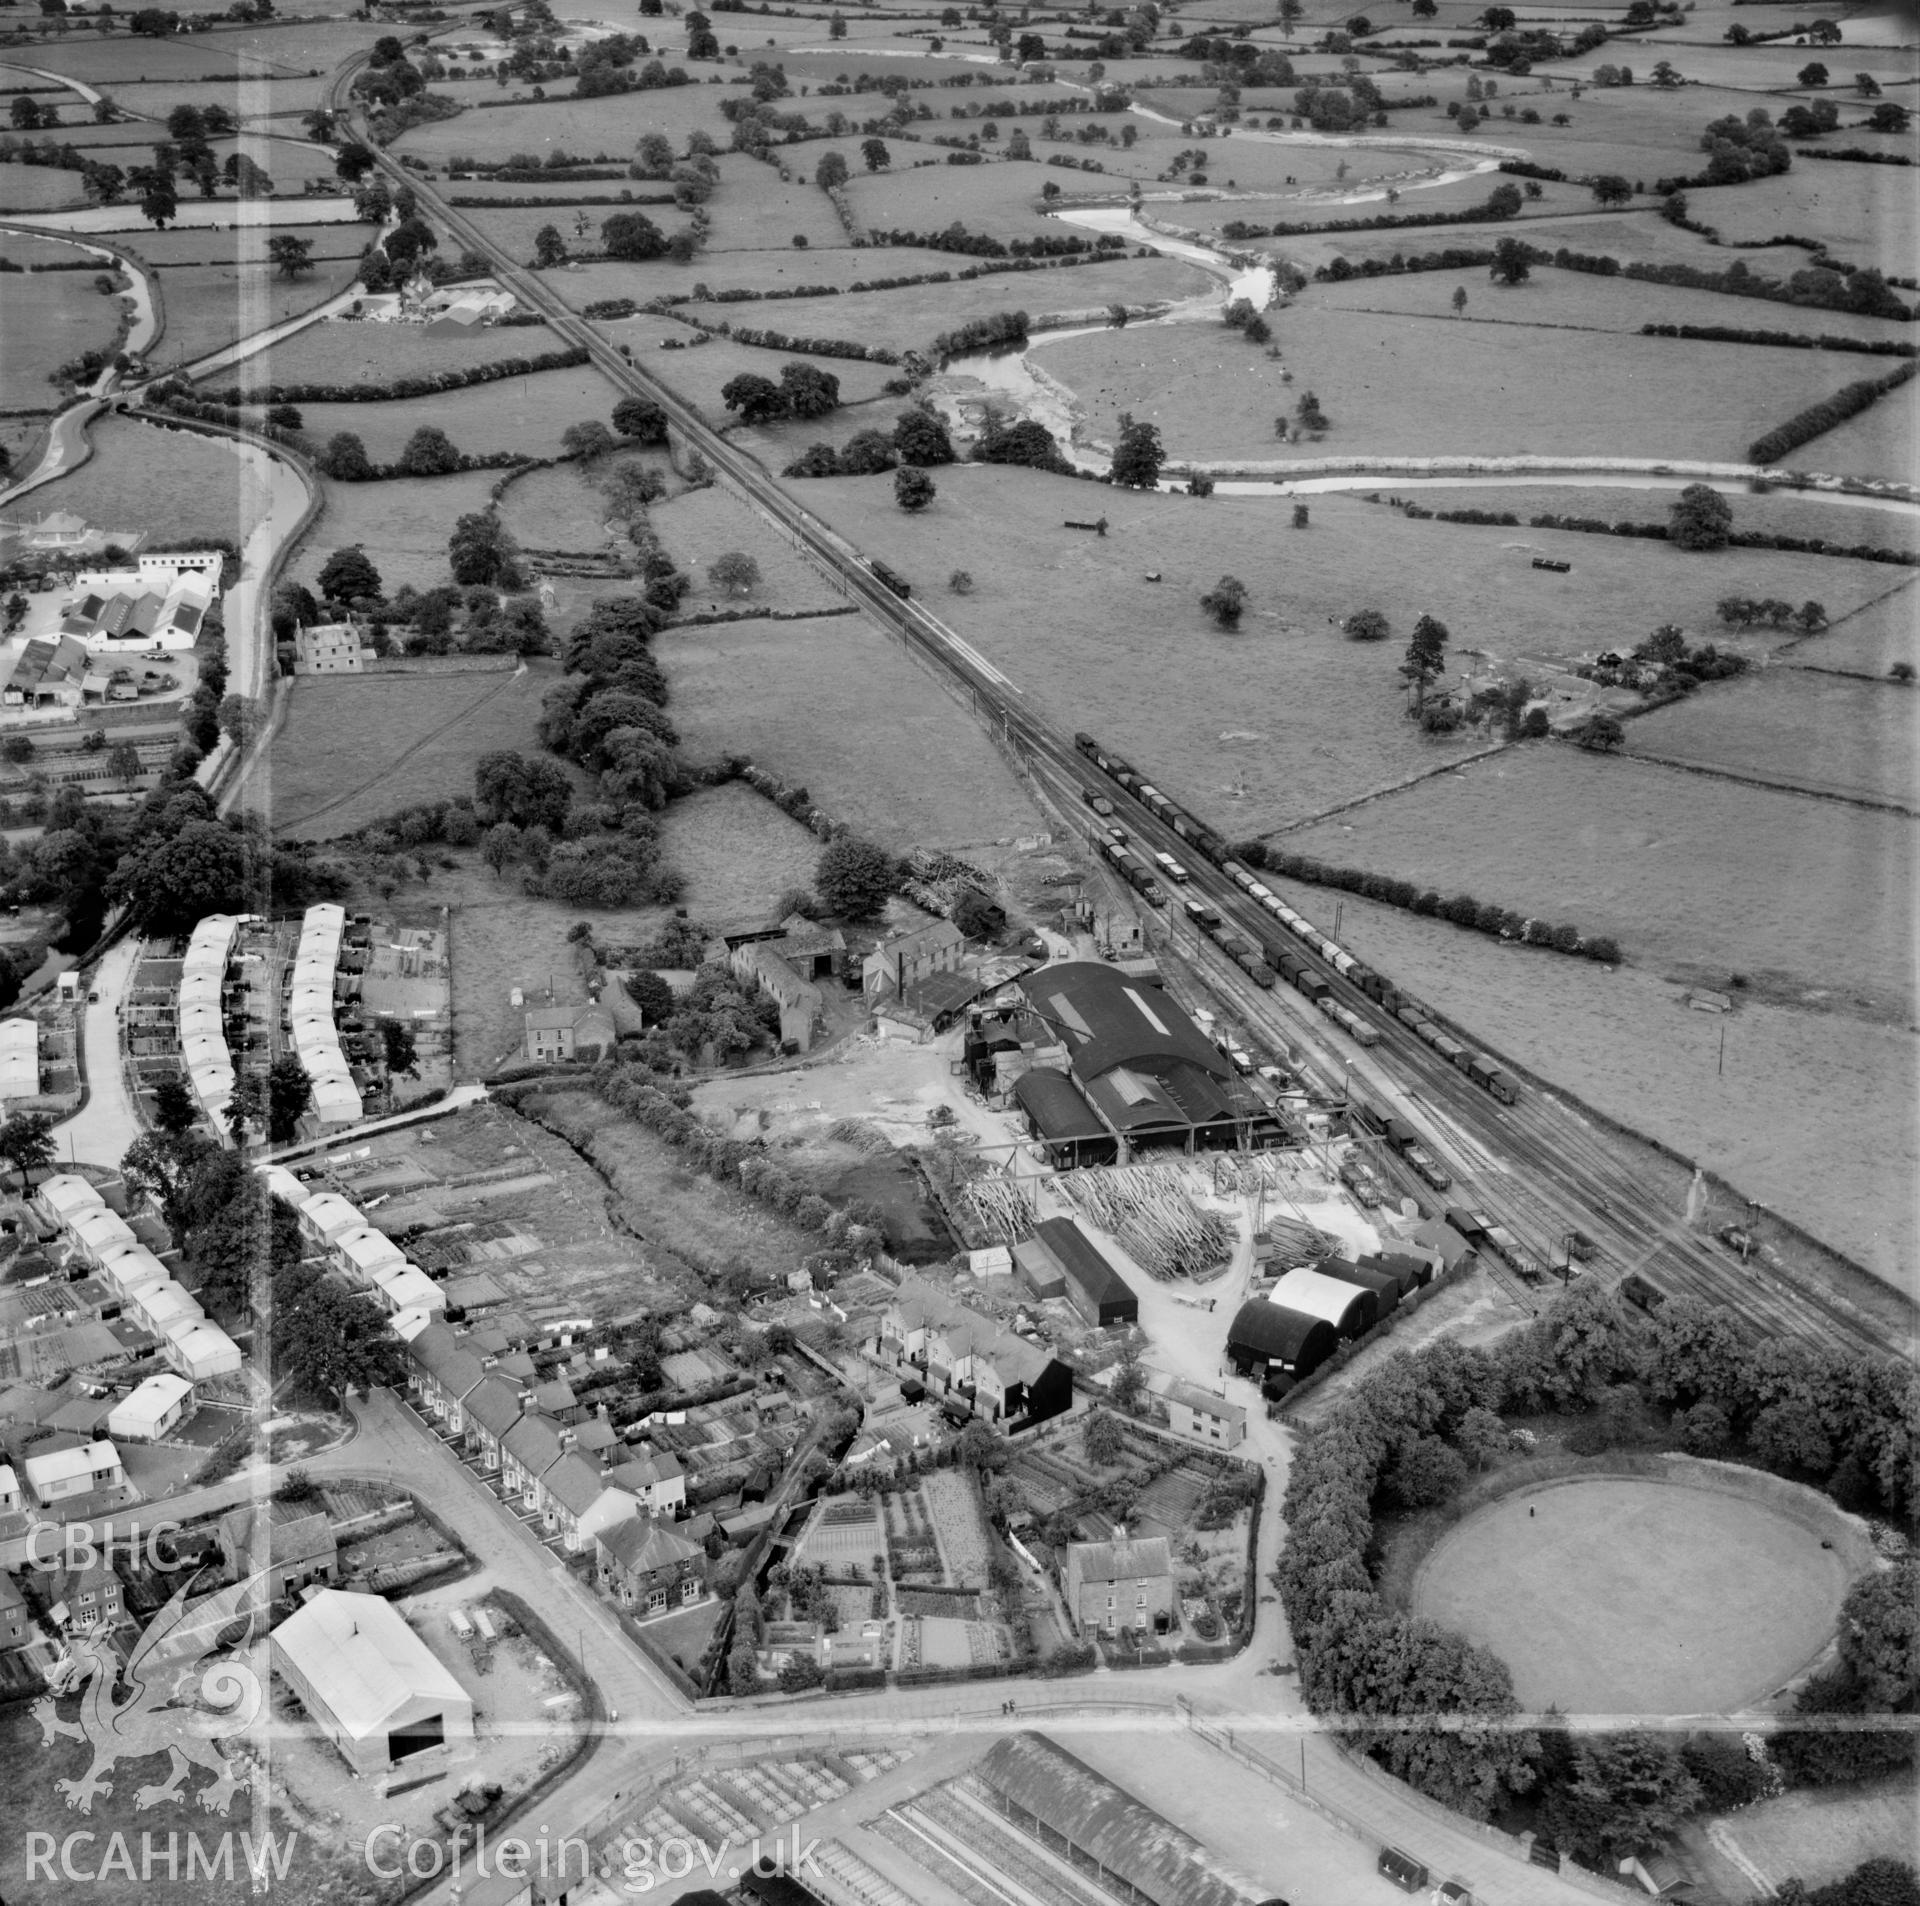 View of Welshpool showing Boys & Boden Ltd., Mill Lane. Welshpool